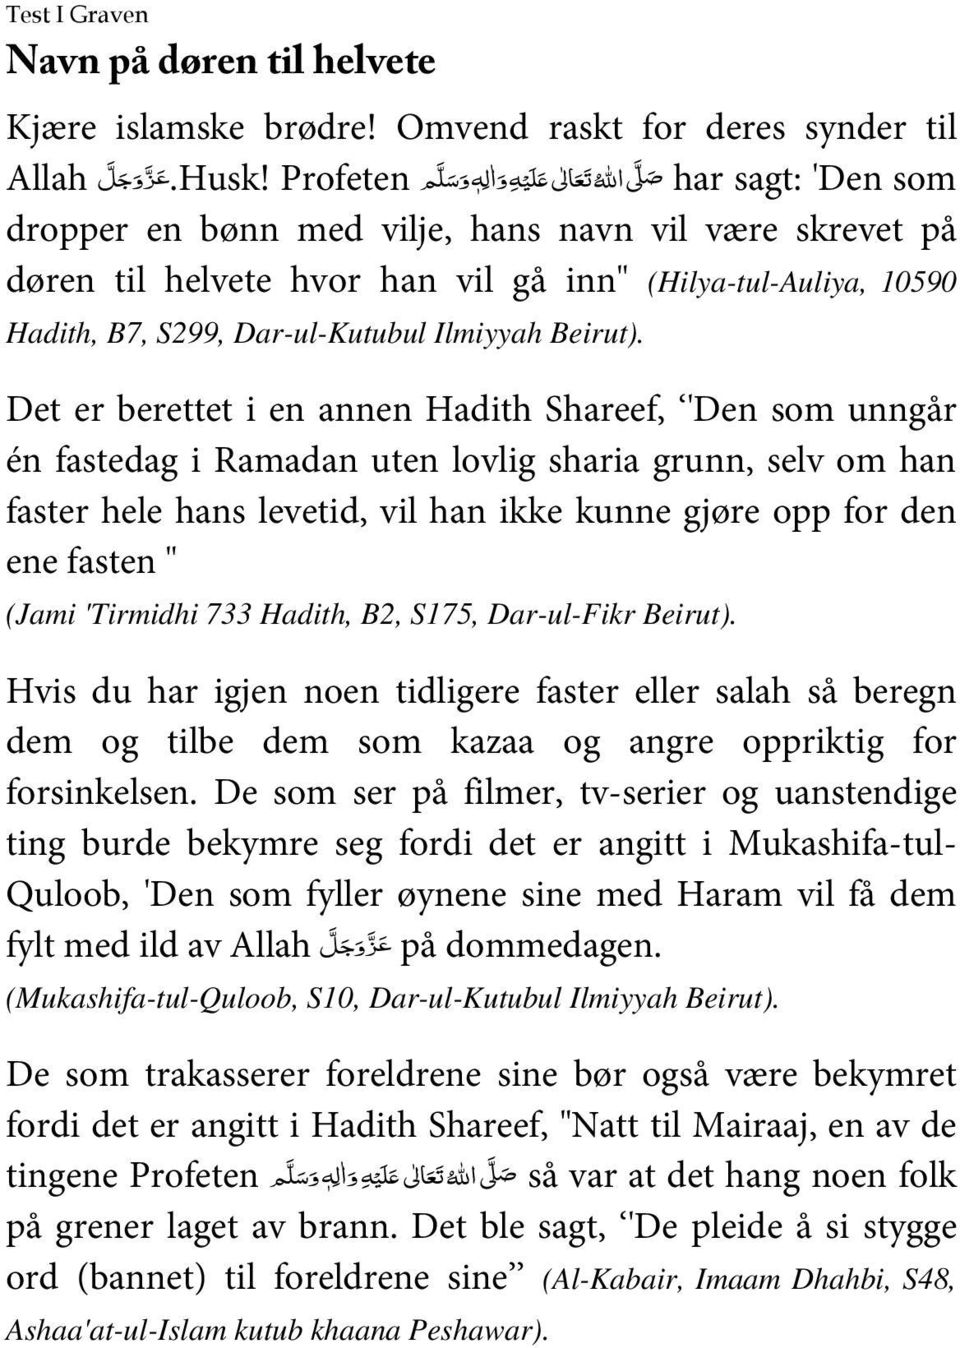 Det er berettet i en annen Hadith Shareef, 'Den som unngår én fastedag i Ramadan uten lovlig sharia grunn, selv om han faster hele hans levetid, vil han ikke kunne gjøre opp for den ene fasten "